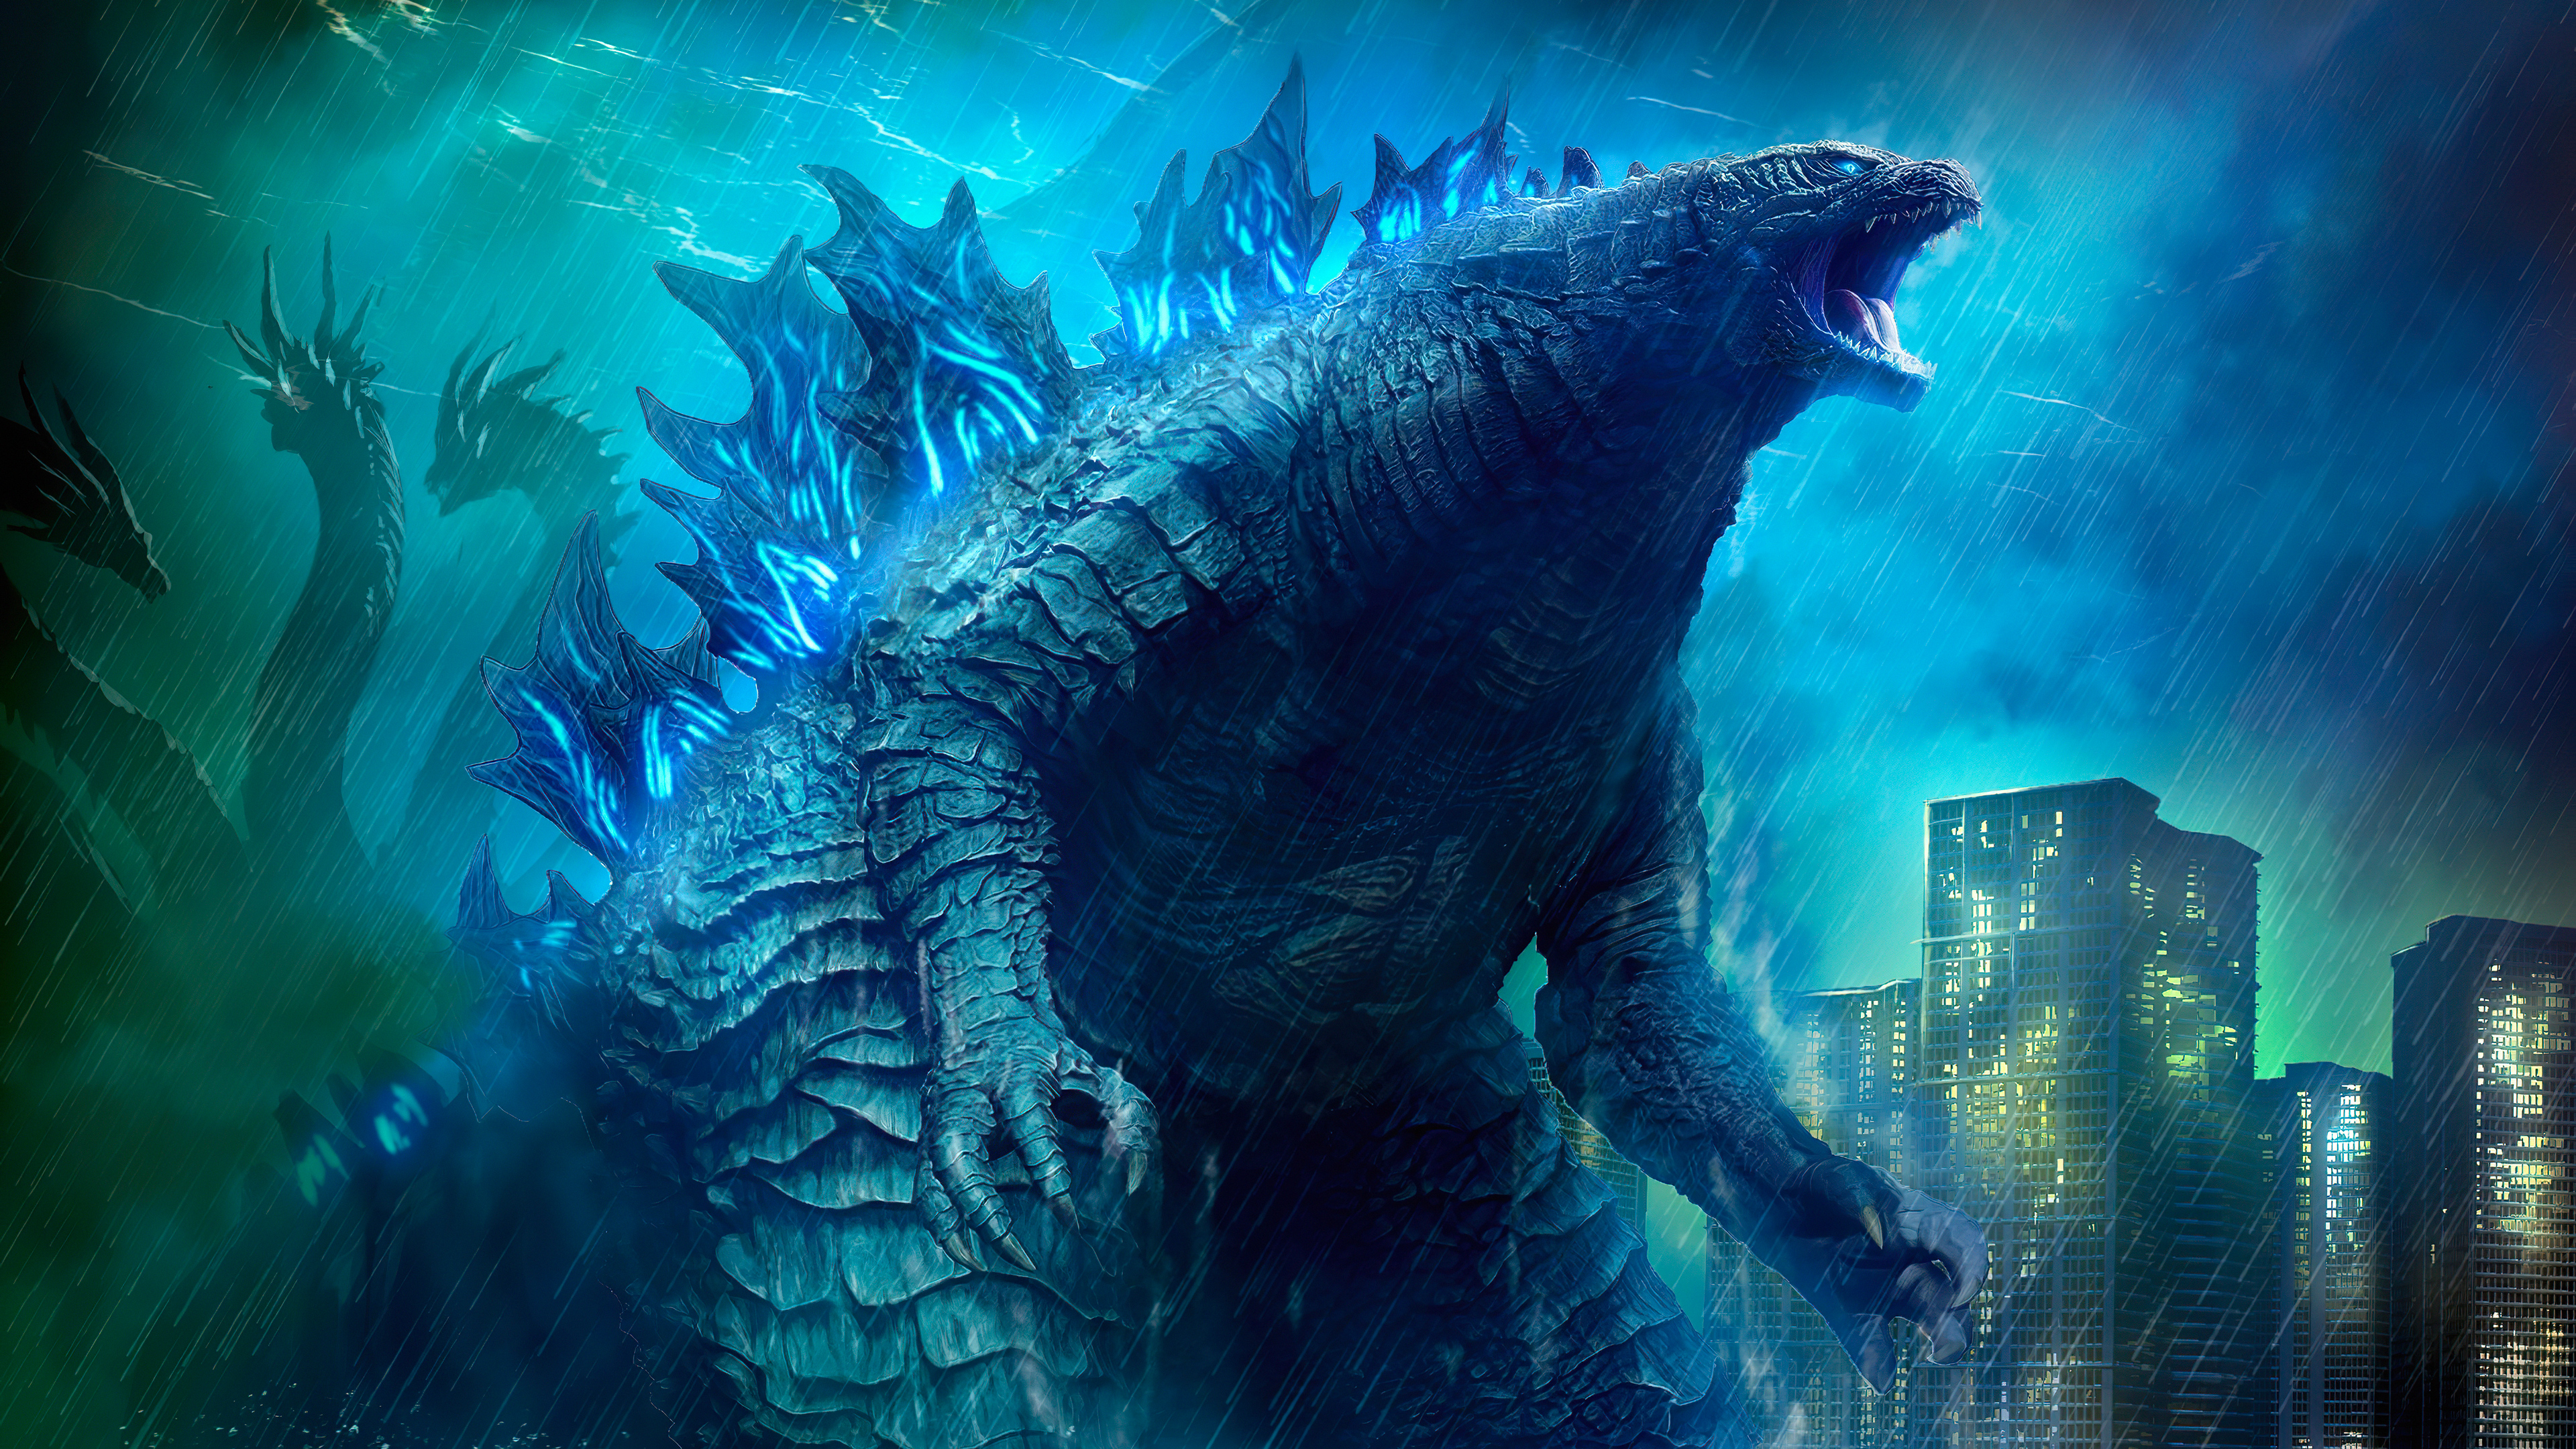 Godzilla 4k Ultra HD Wallpaper Background Image